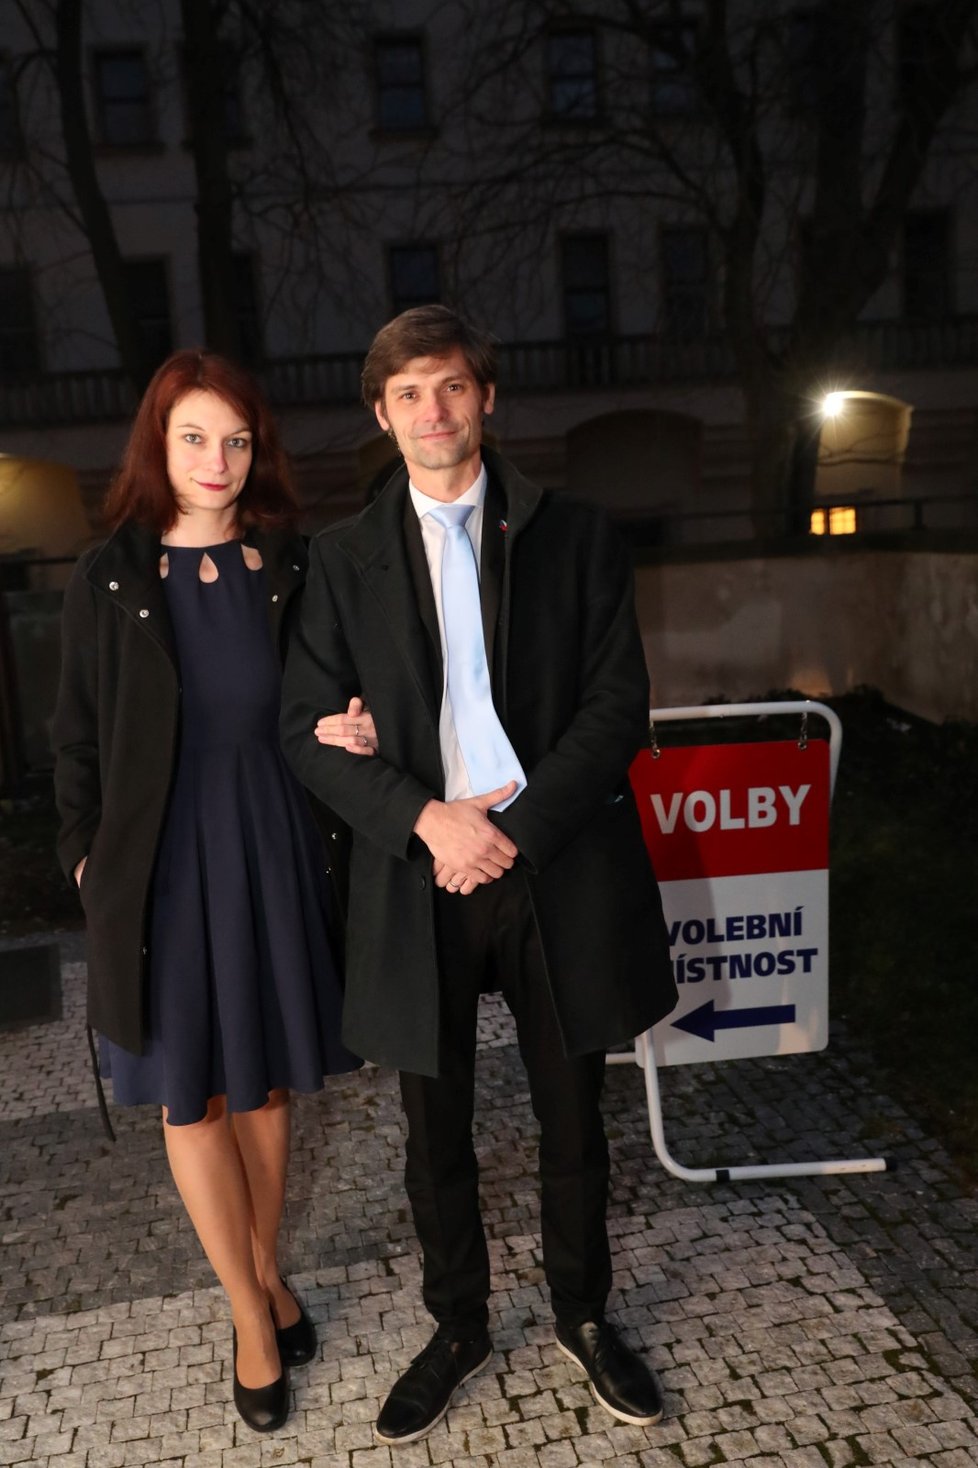 Jako předposlední z kandidátů k urnám dorazil lékař Marek Hilšer se svou manželkou